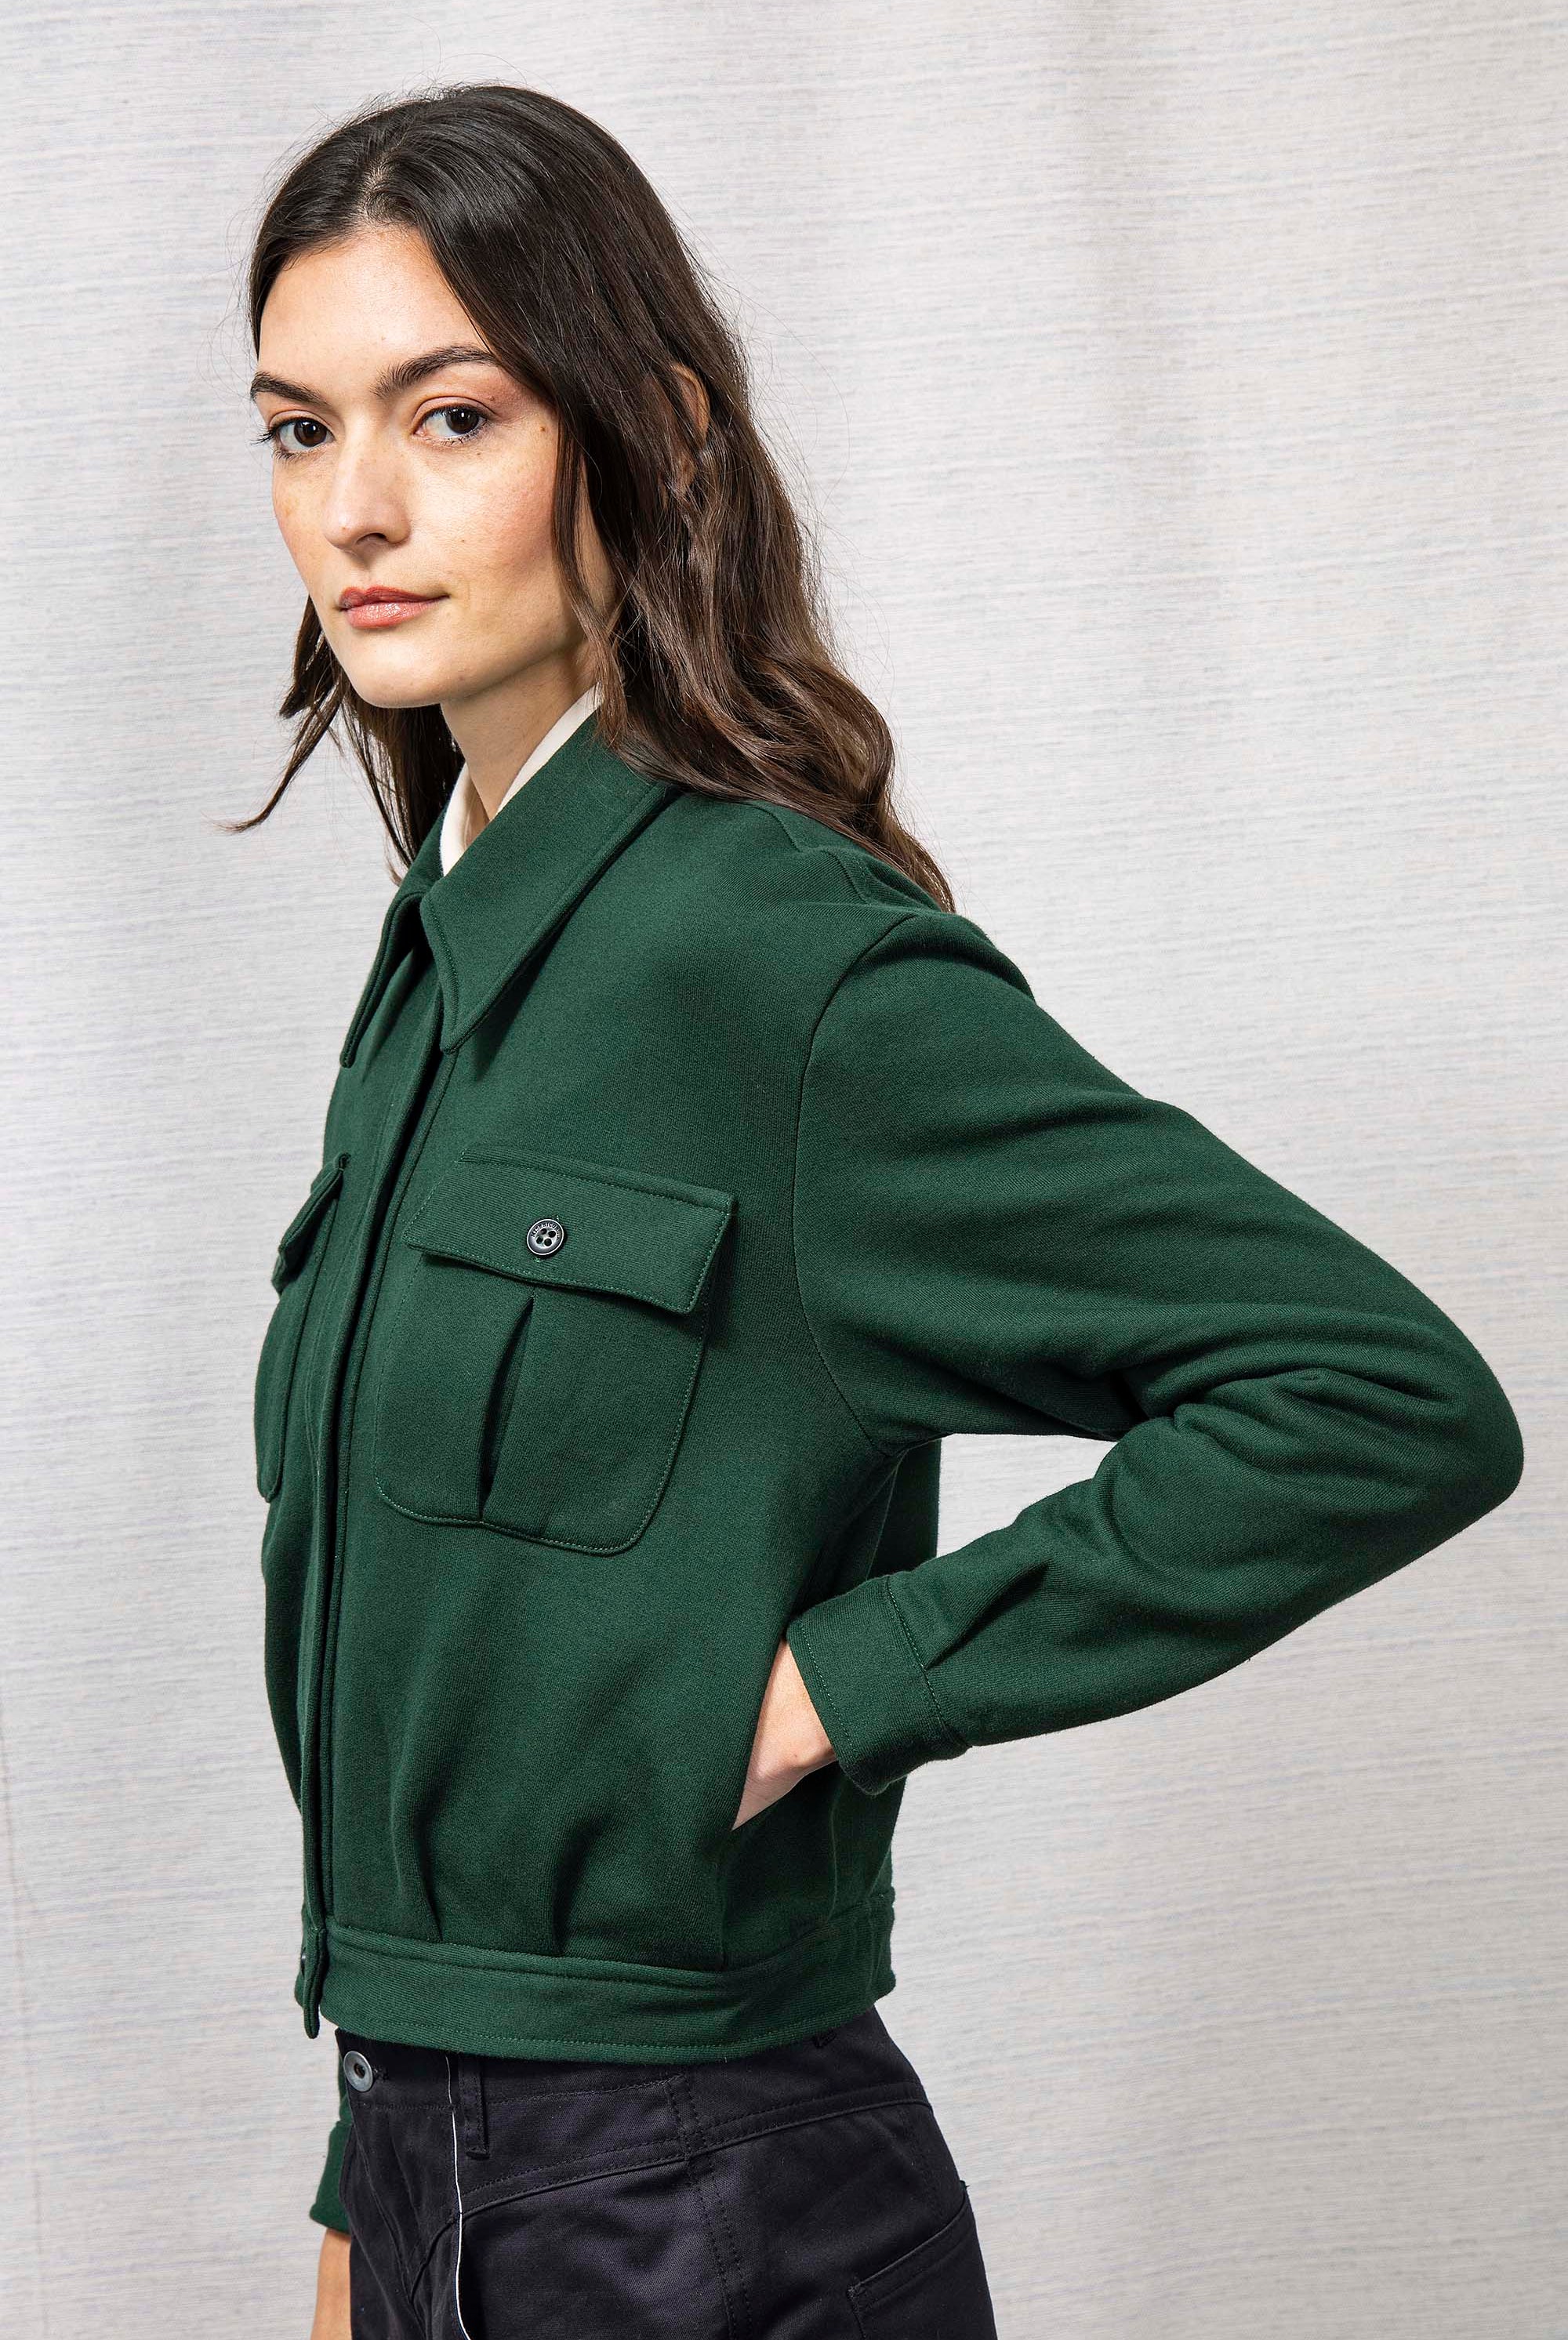 Veste Dione Vert Foncé le sweatshirt femme Misericordia revendique une nouvelle identité tendance